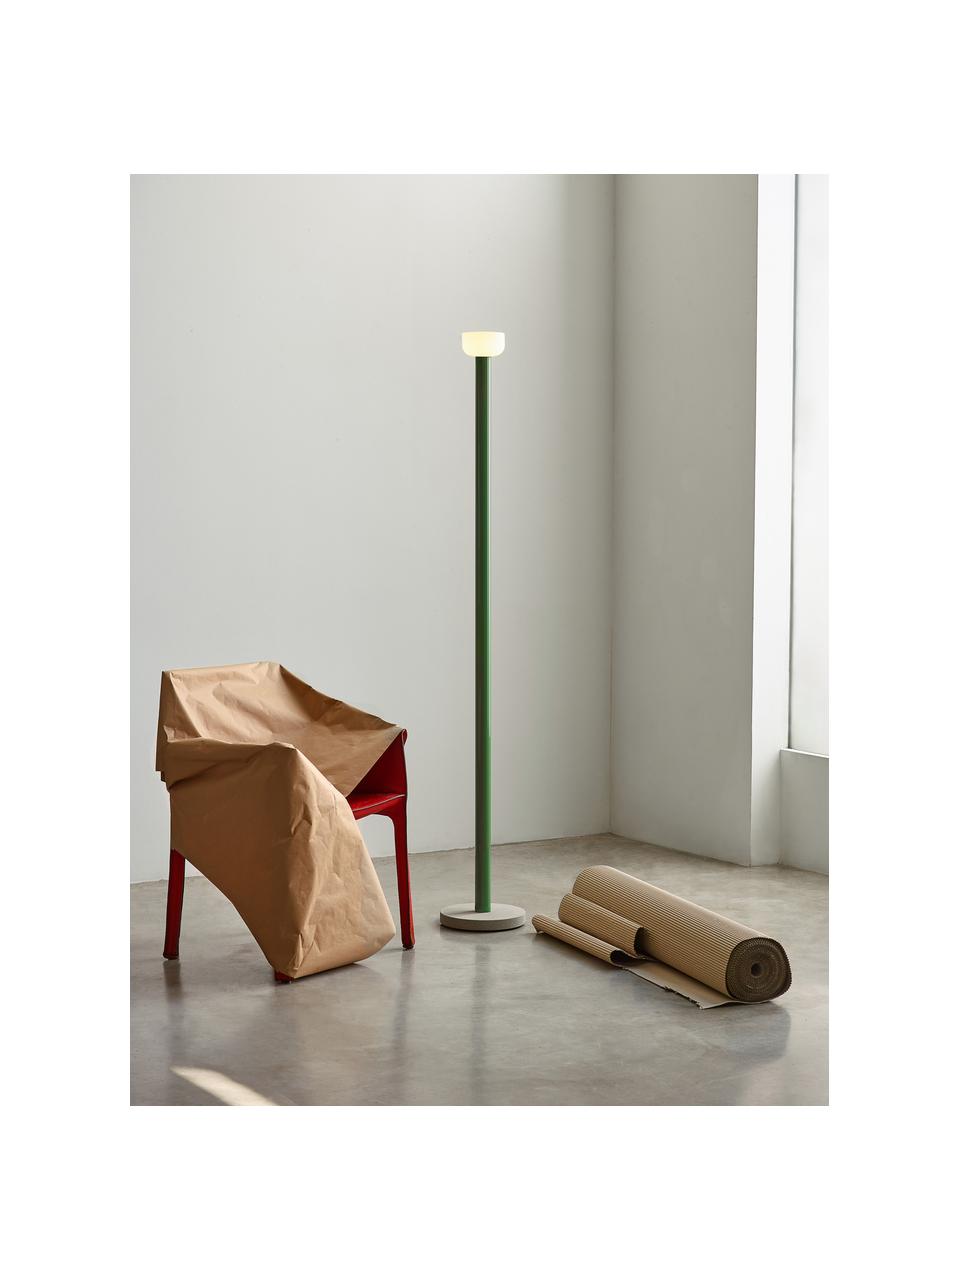 Lampa podłogowa LED z funkcją przyciemniania Bellhop, Zielony, W 178 cm